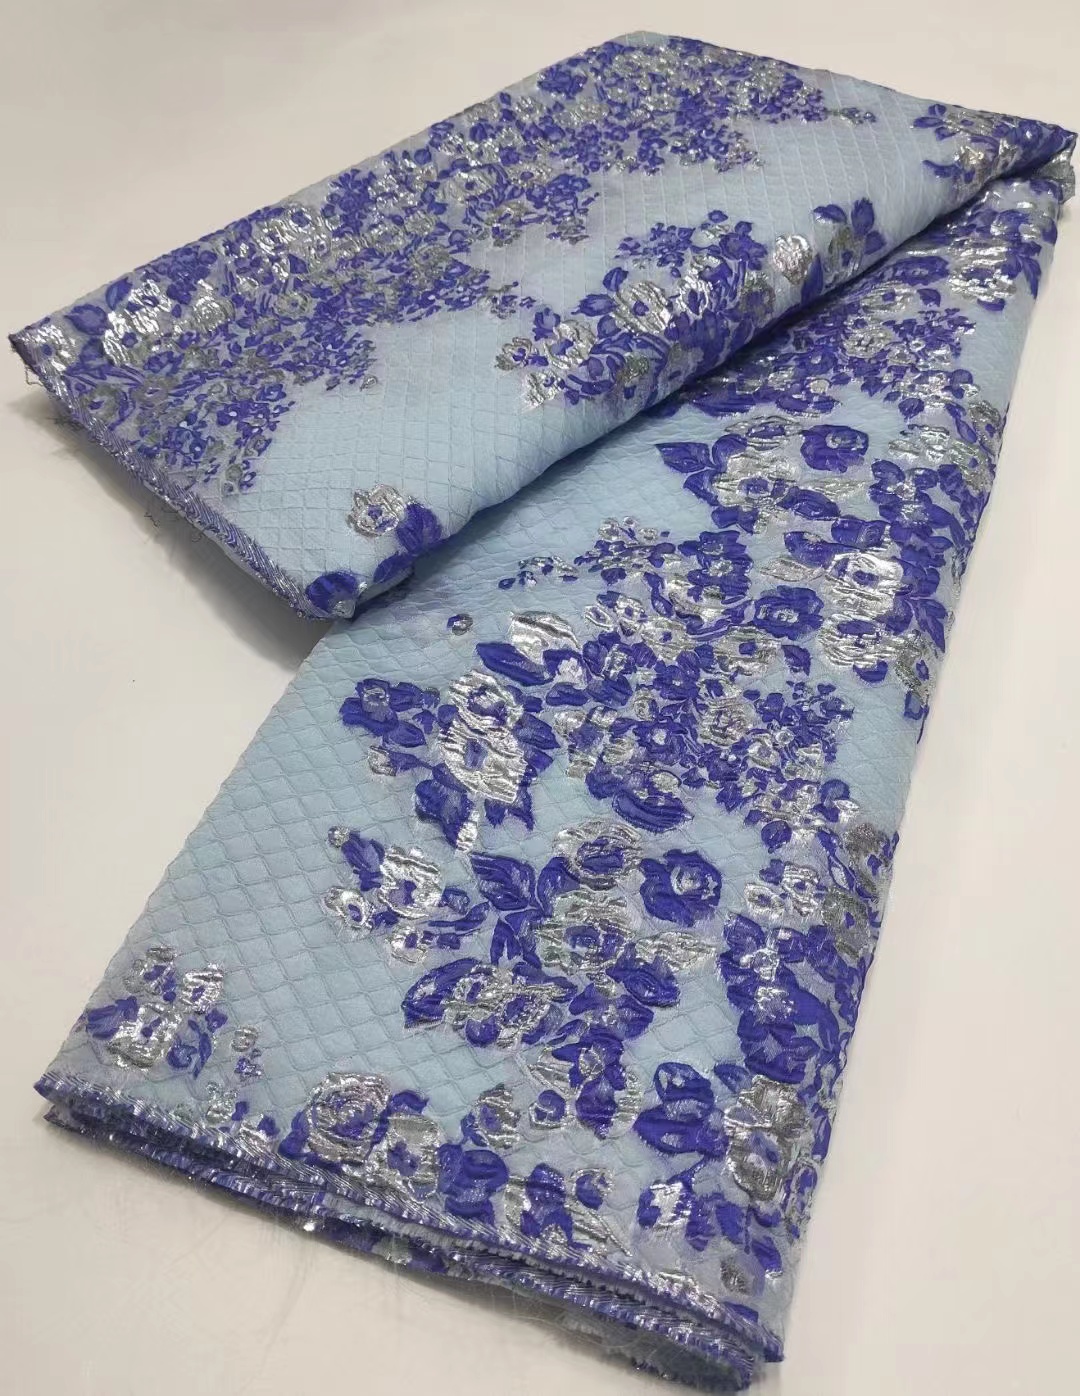 Thibaut Velvet Jacquard Silk Velvet Upholstery Fabric in Brown $29.95 per  yard